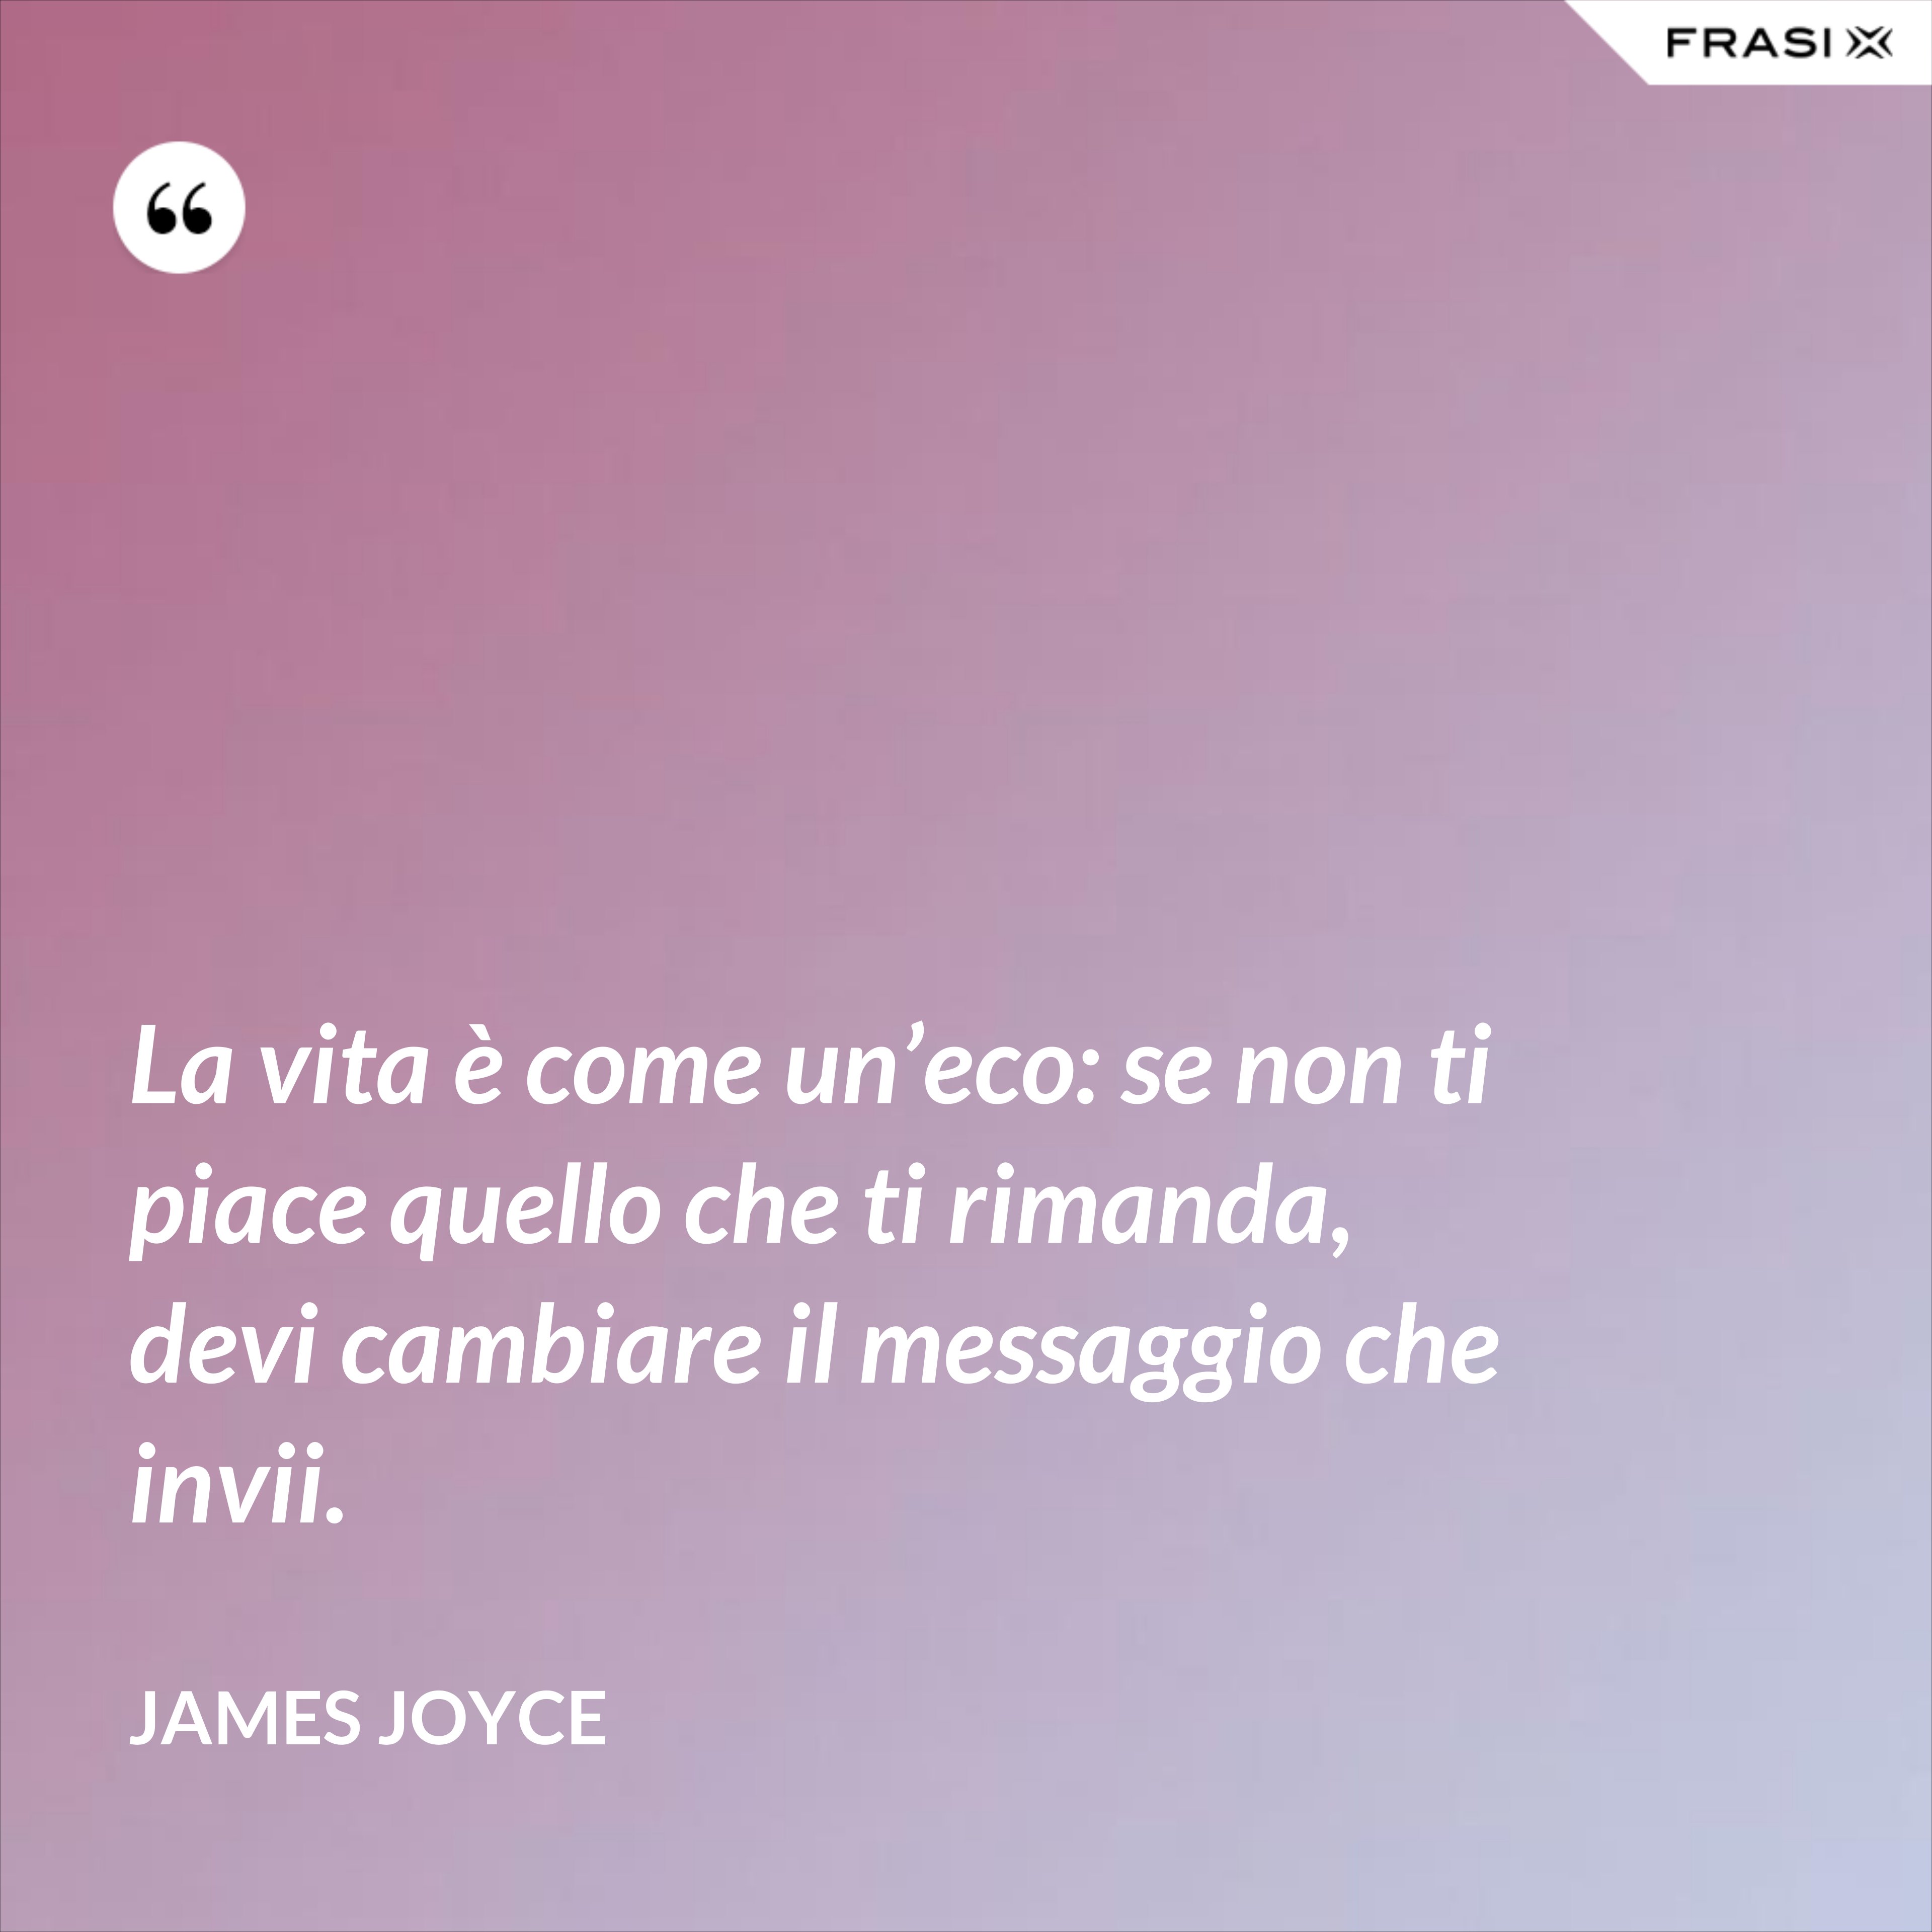 La vita è come un’eco: se non ti piace quello che ti rimanda, devi cambiare il messaggio che invii. - James Joyce